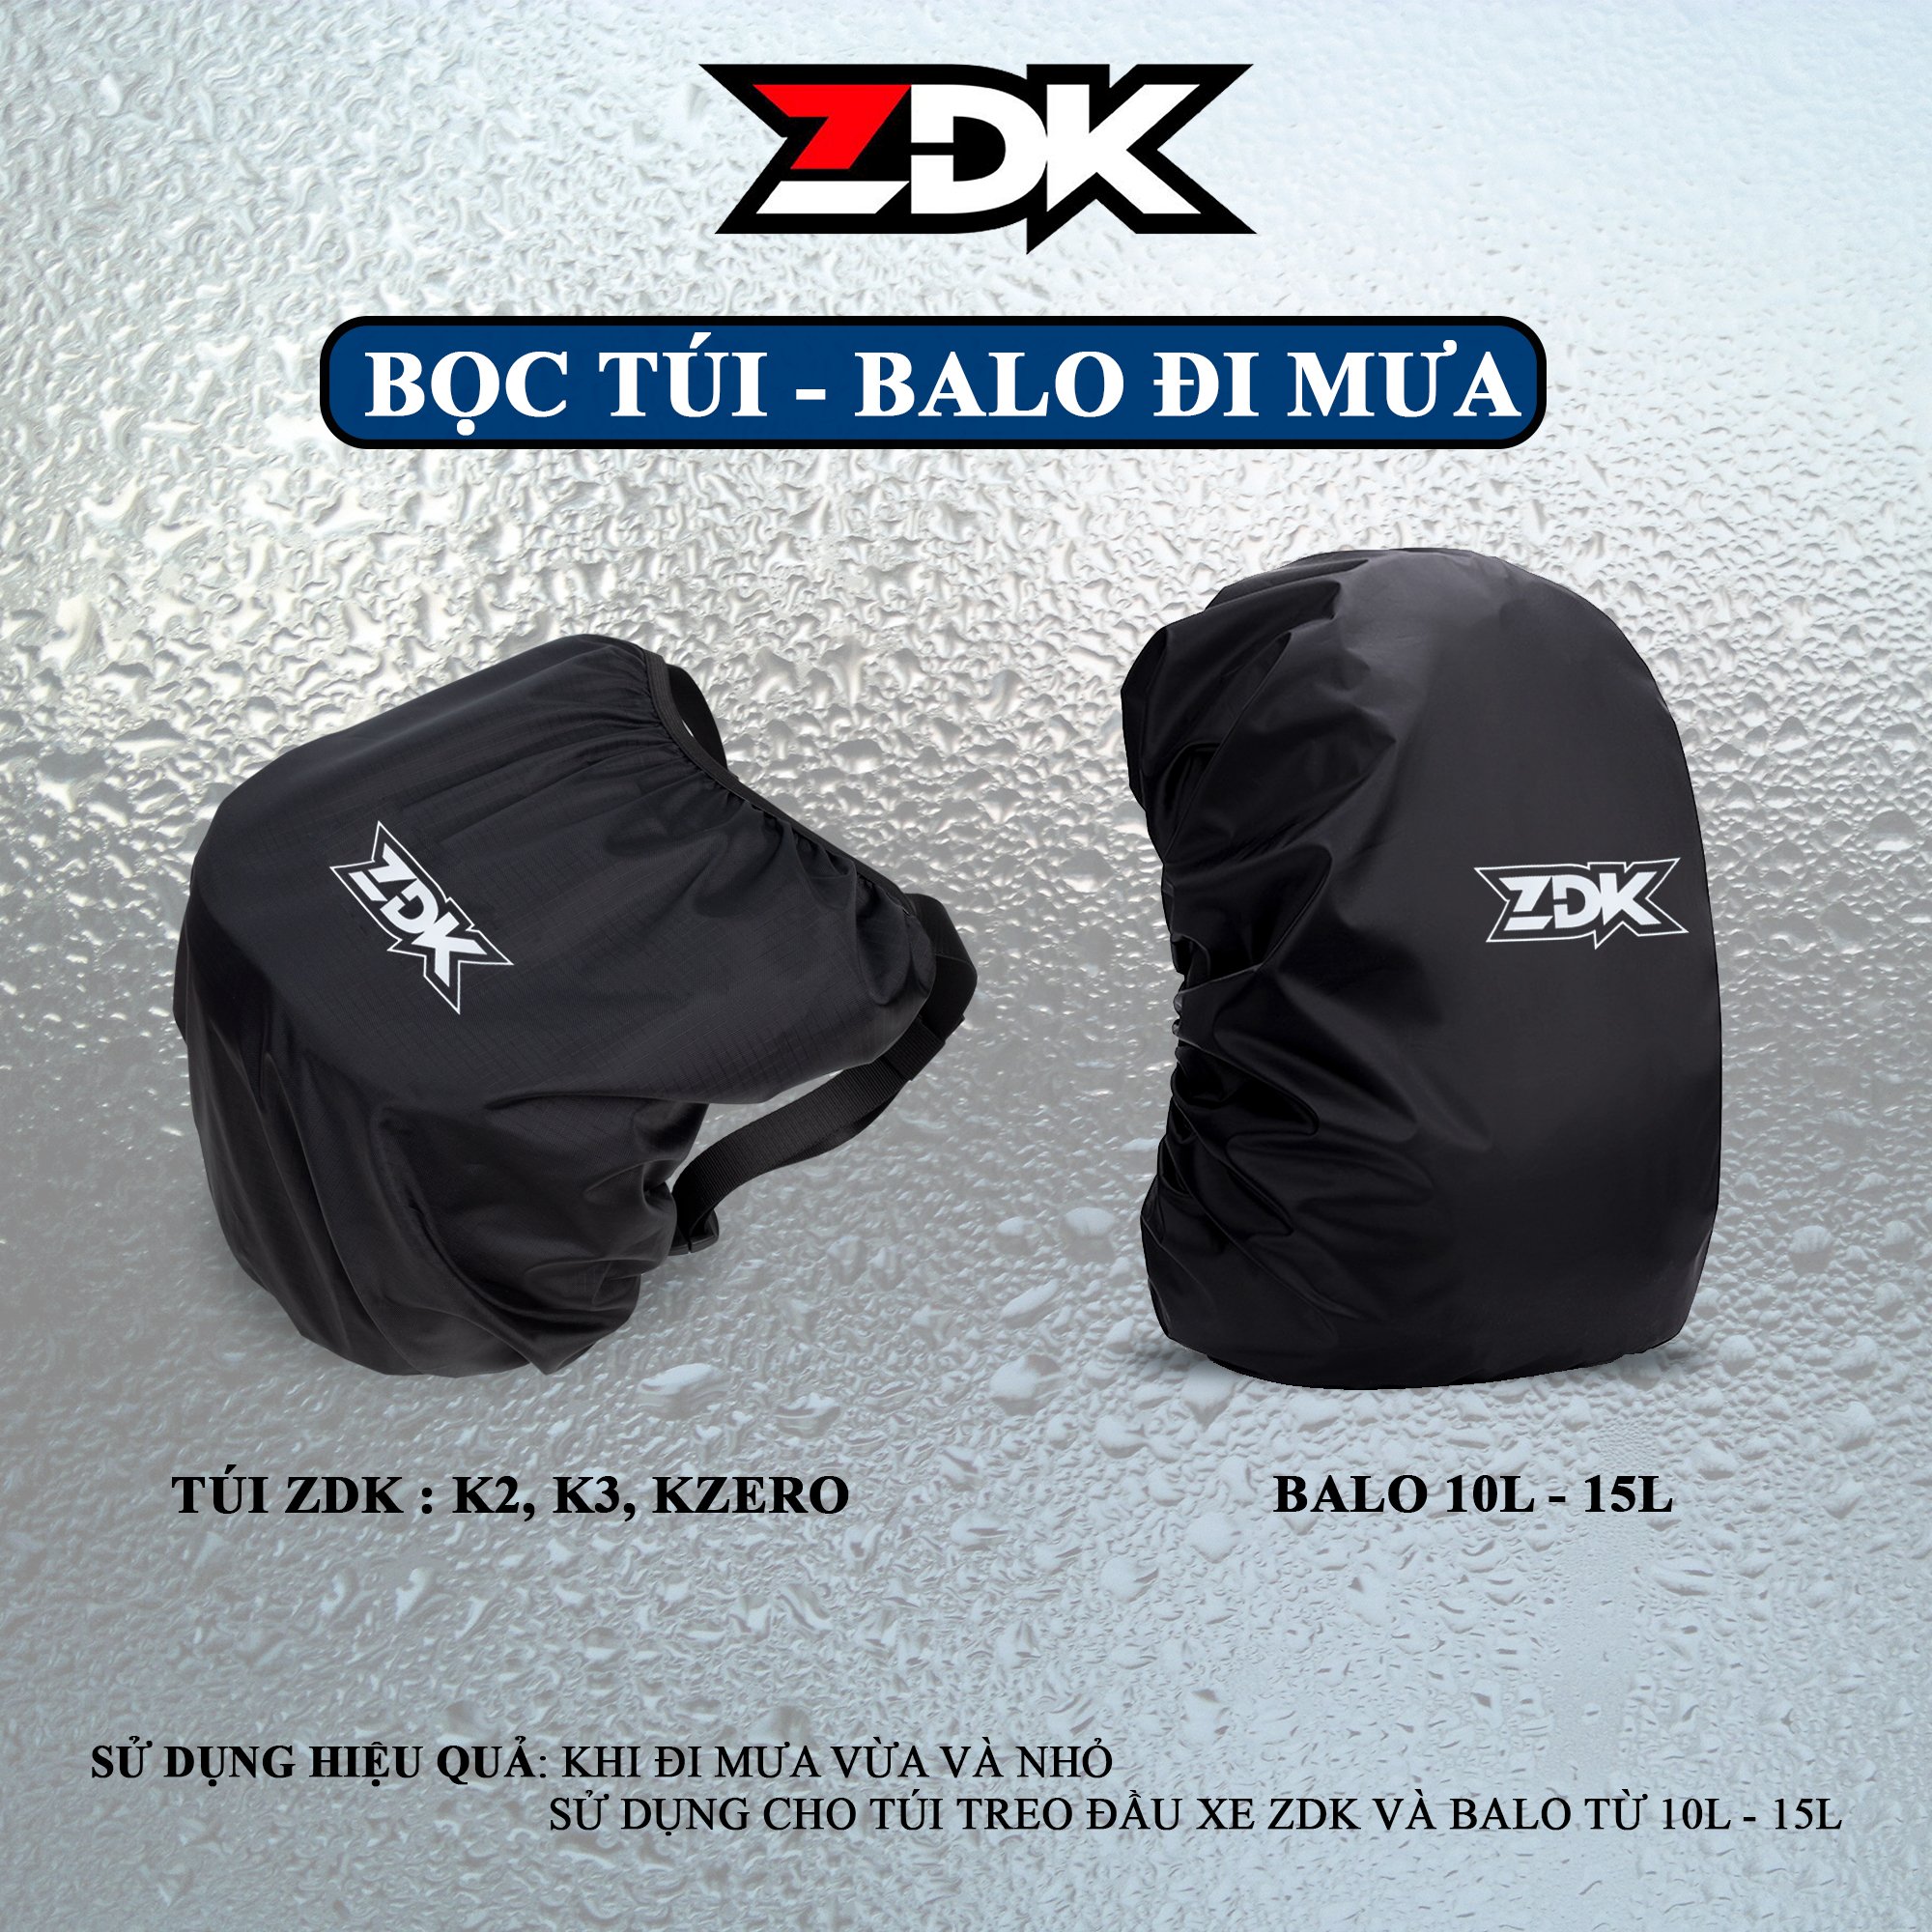 Bọc túi chống mưa ZDK, bọc balo tiện dụng - áo mưa trùm túi ZDK,Grap dọc treo đầu xe (Chỉ có bọc chống nước)